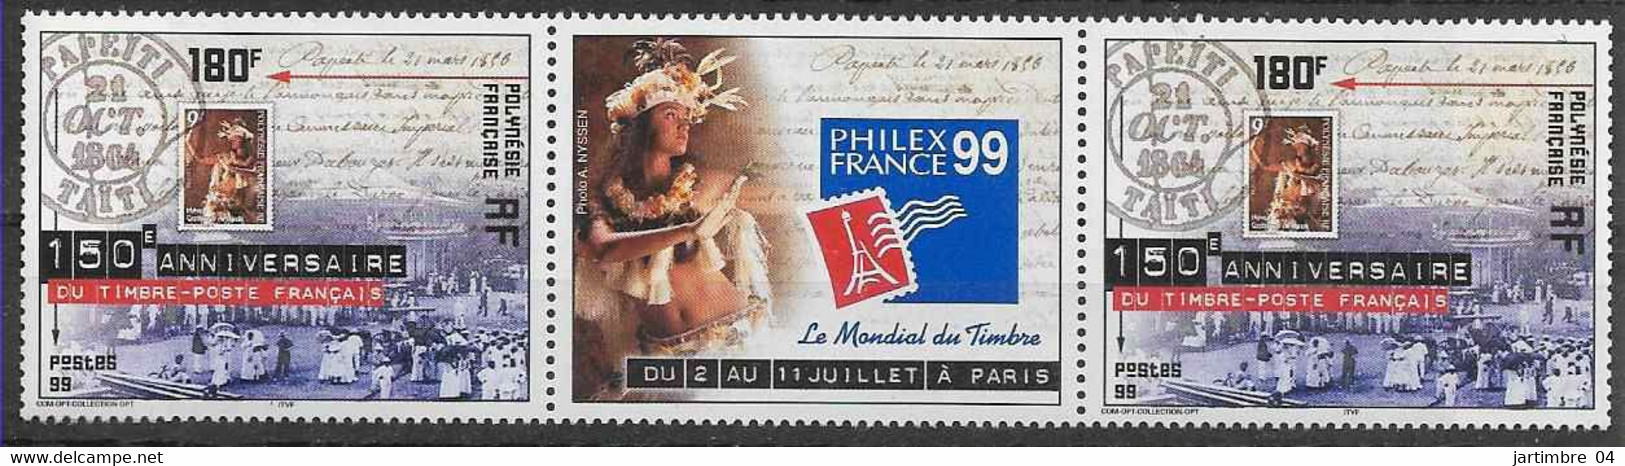 1999 POLYNESIE FRANCAISE 602** Philexfrance, Timbre Sur Timbre, Paire Avec Vignette - Neufs